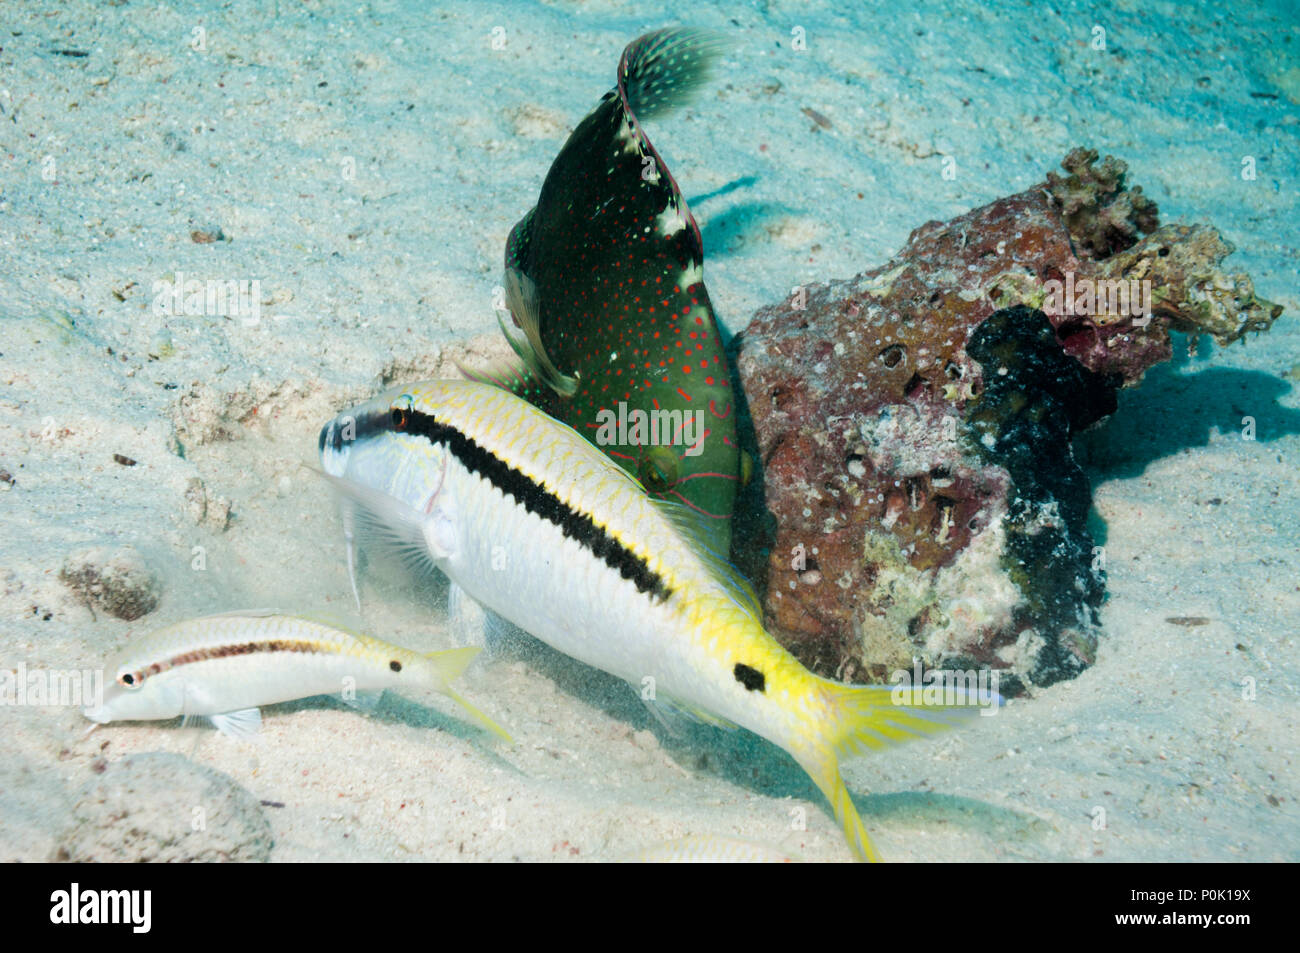 Abudjubbe's Glanz lippfisch (Cheilinus abudjubbe) nach einer Dash-und-dot Meerbarben (Parupeneus barbarinus) Graben im Sand. Ägypten, Rotes Meer. Stockfoto